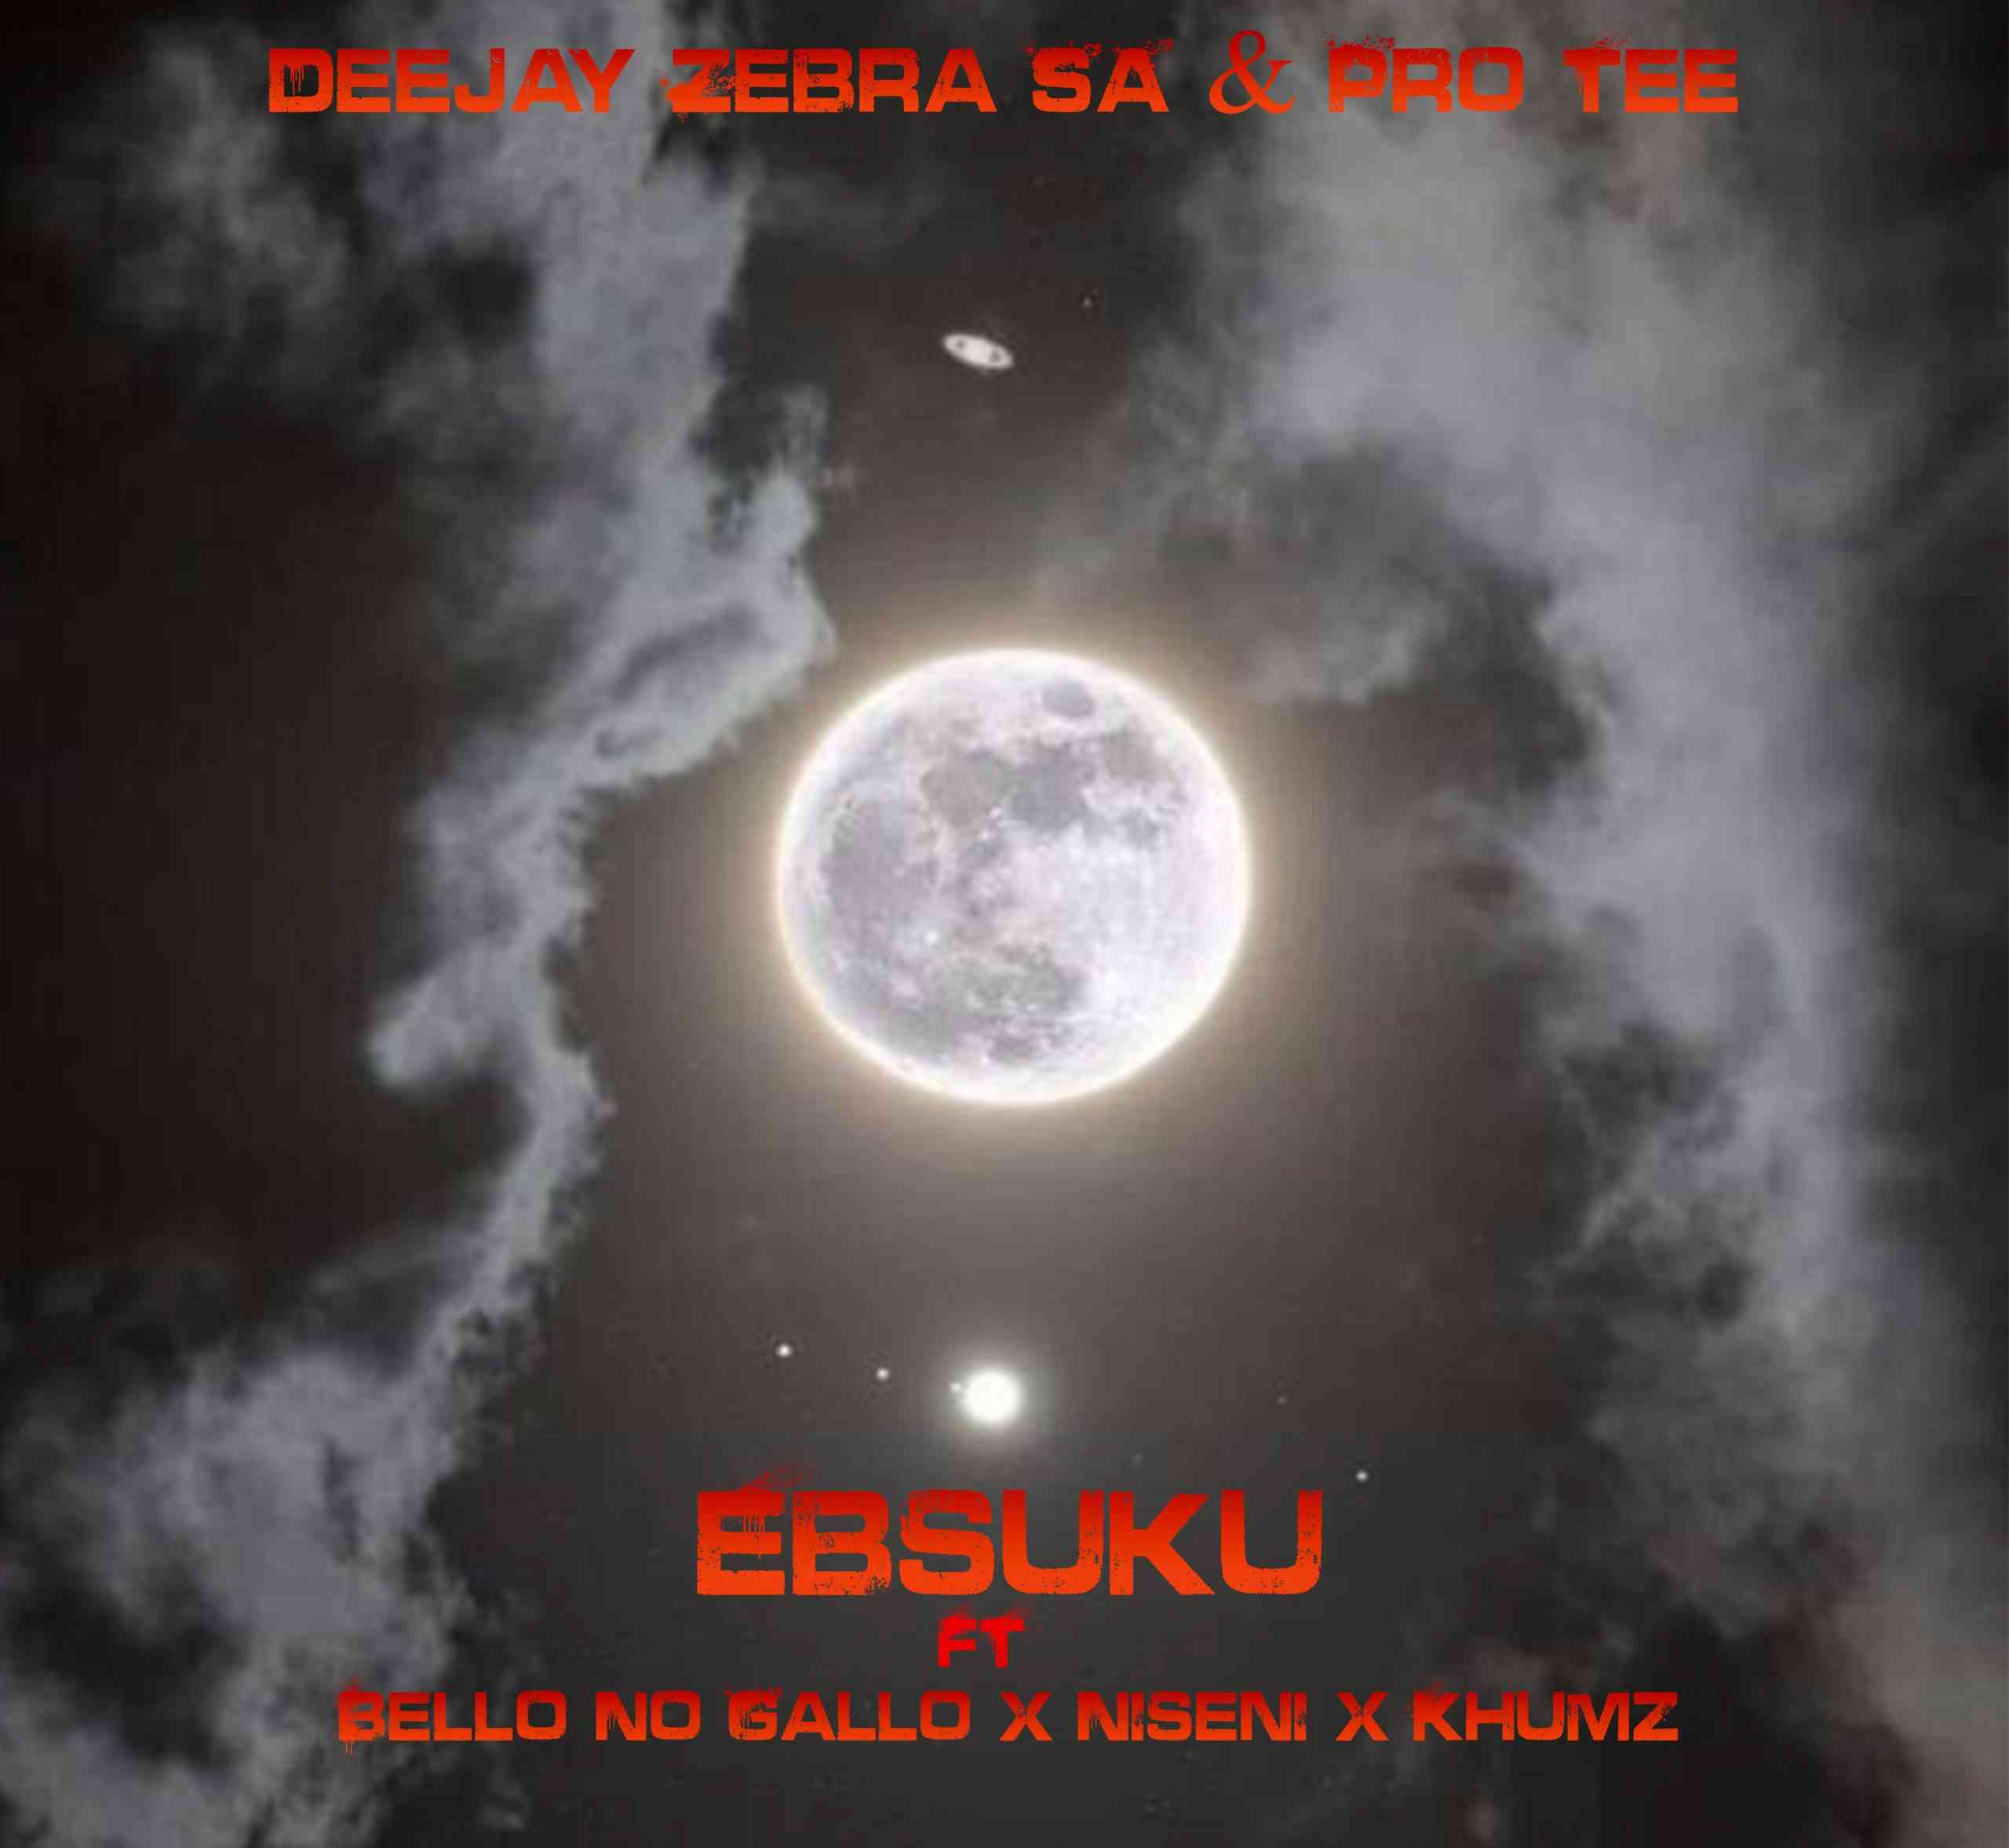 Deejay Zebra SA & Pro-Tee Ebsuku Ft Bello No Gallo, Niseni & Khumz